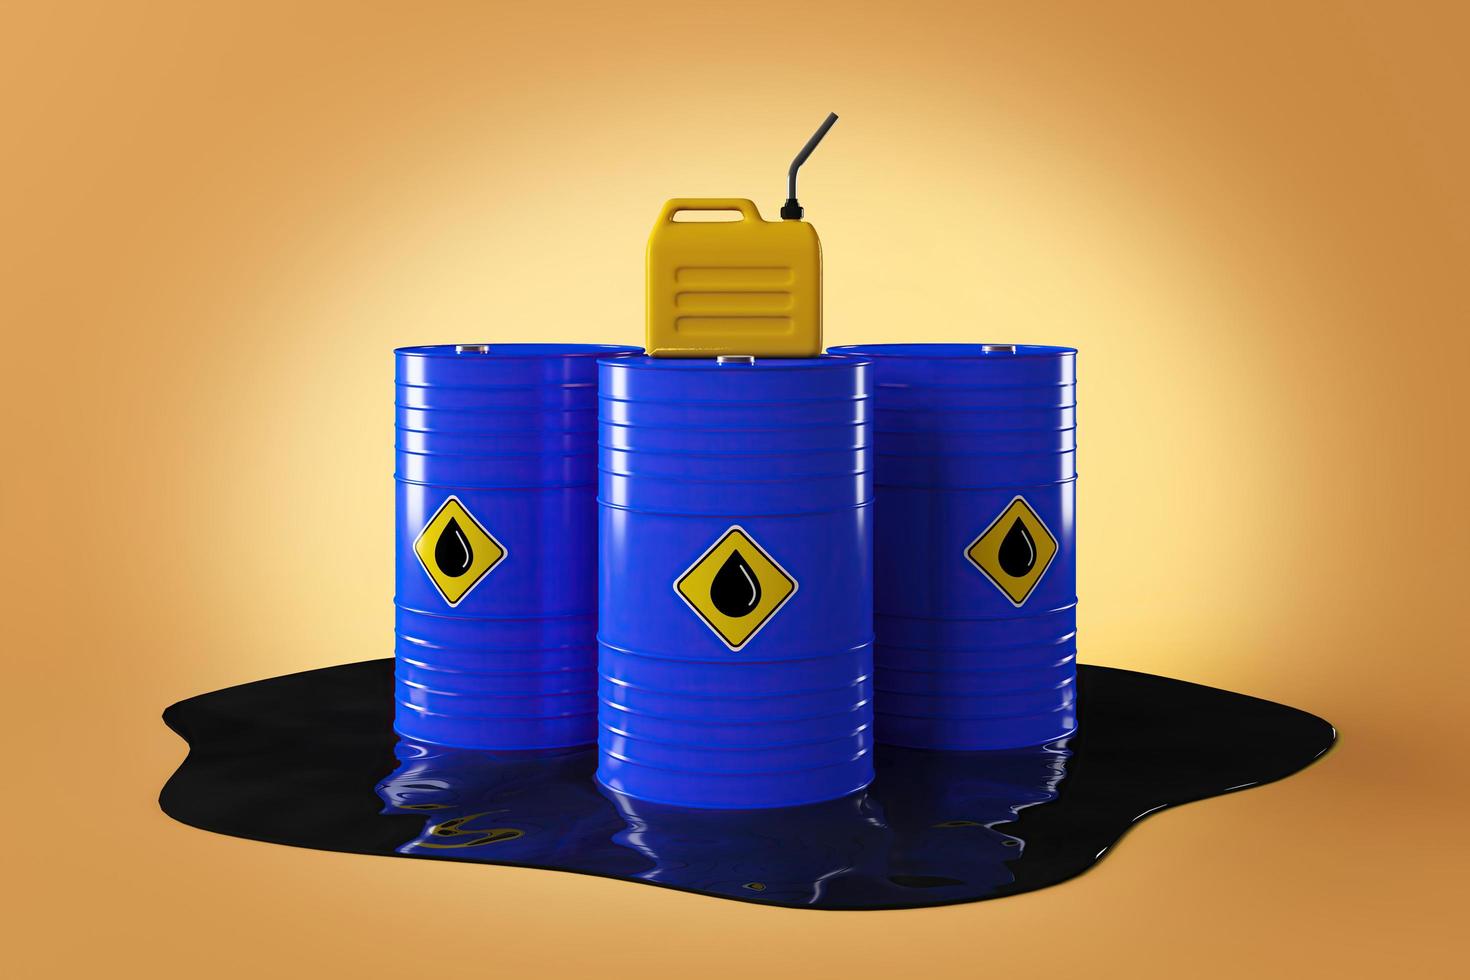 blå oljetank och gul jerrycan i plast på svart olja, minimal bakgrund för energikoncept. 3d-rendering foto